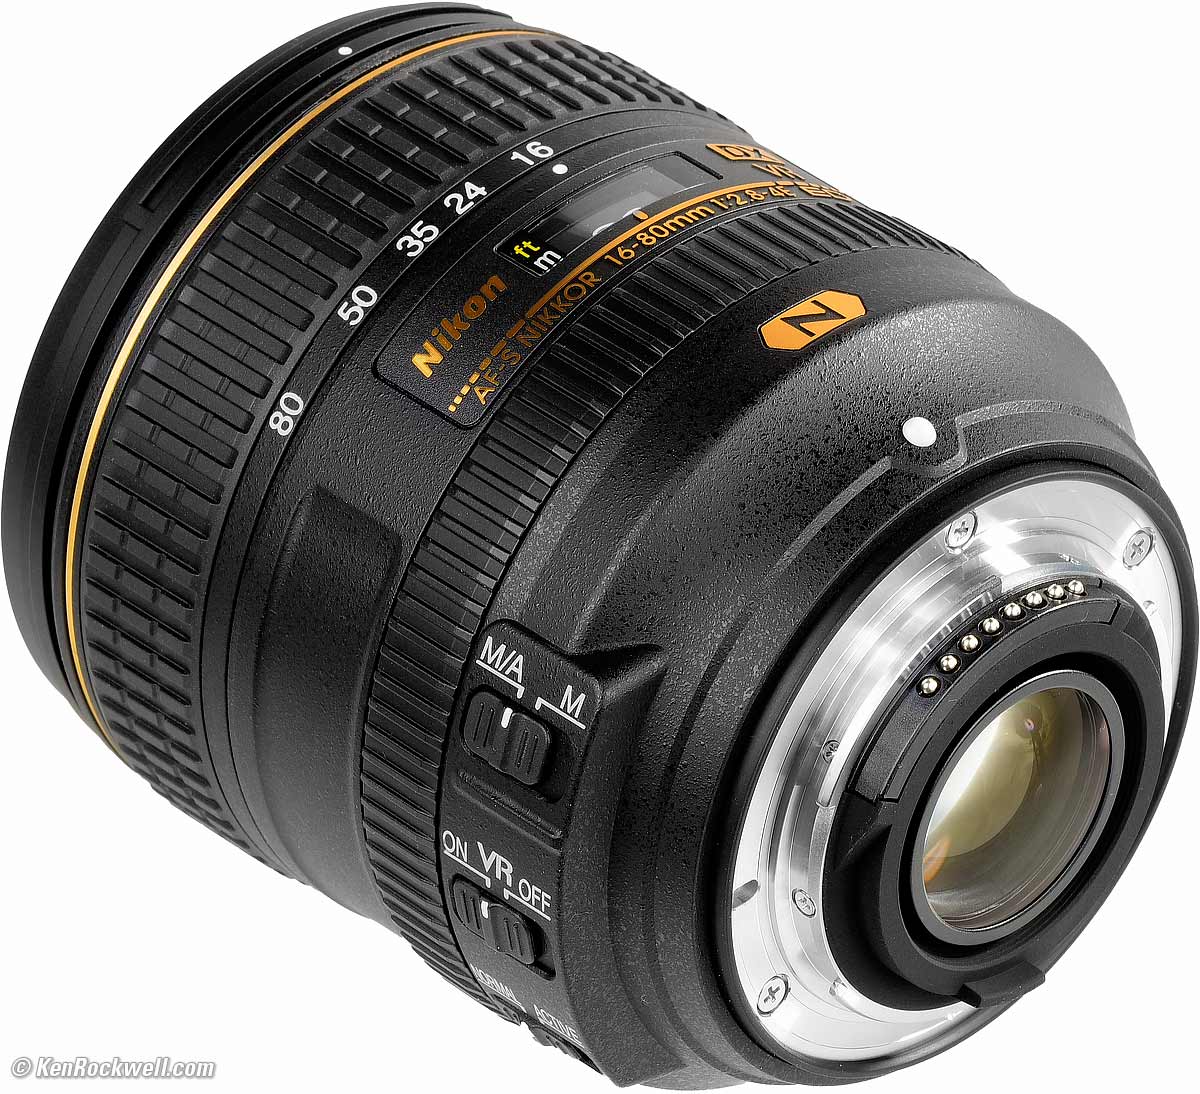 Nikon 16-80mm VR Review